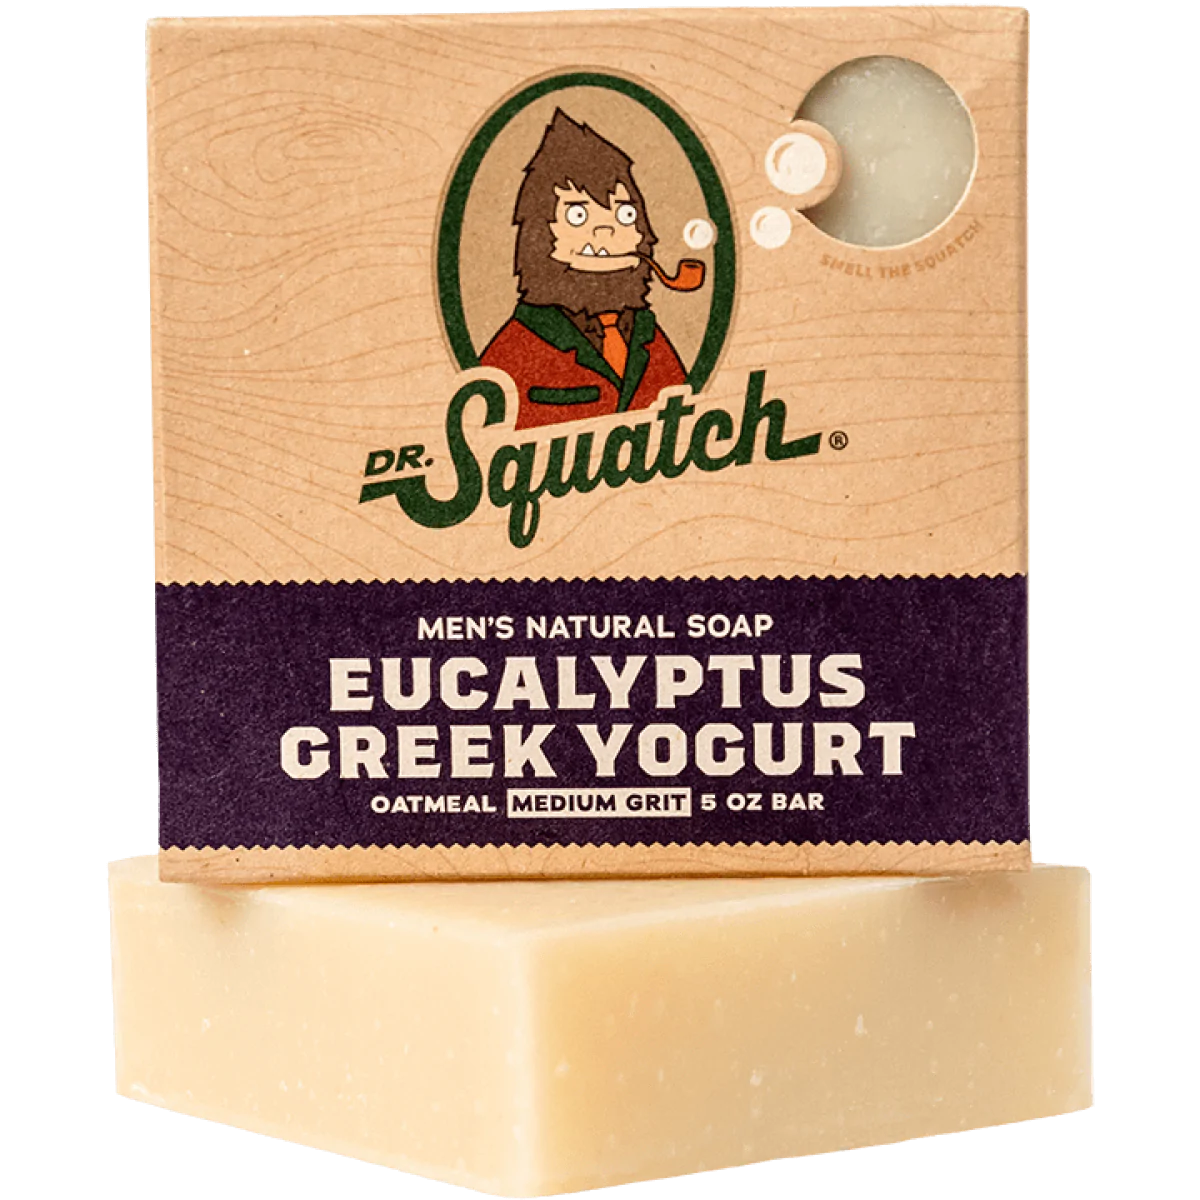 Eucalyptus Greek Yogurt Bar Soap by Dr. Squatch--Lemons and Limes Boutique